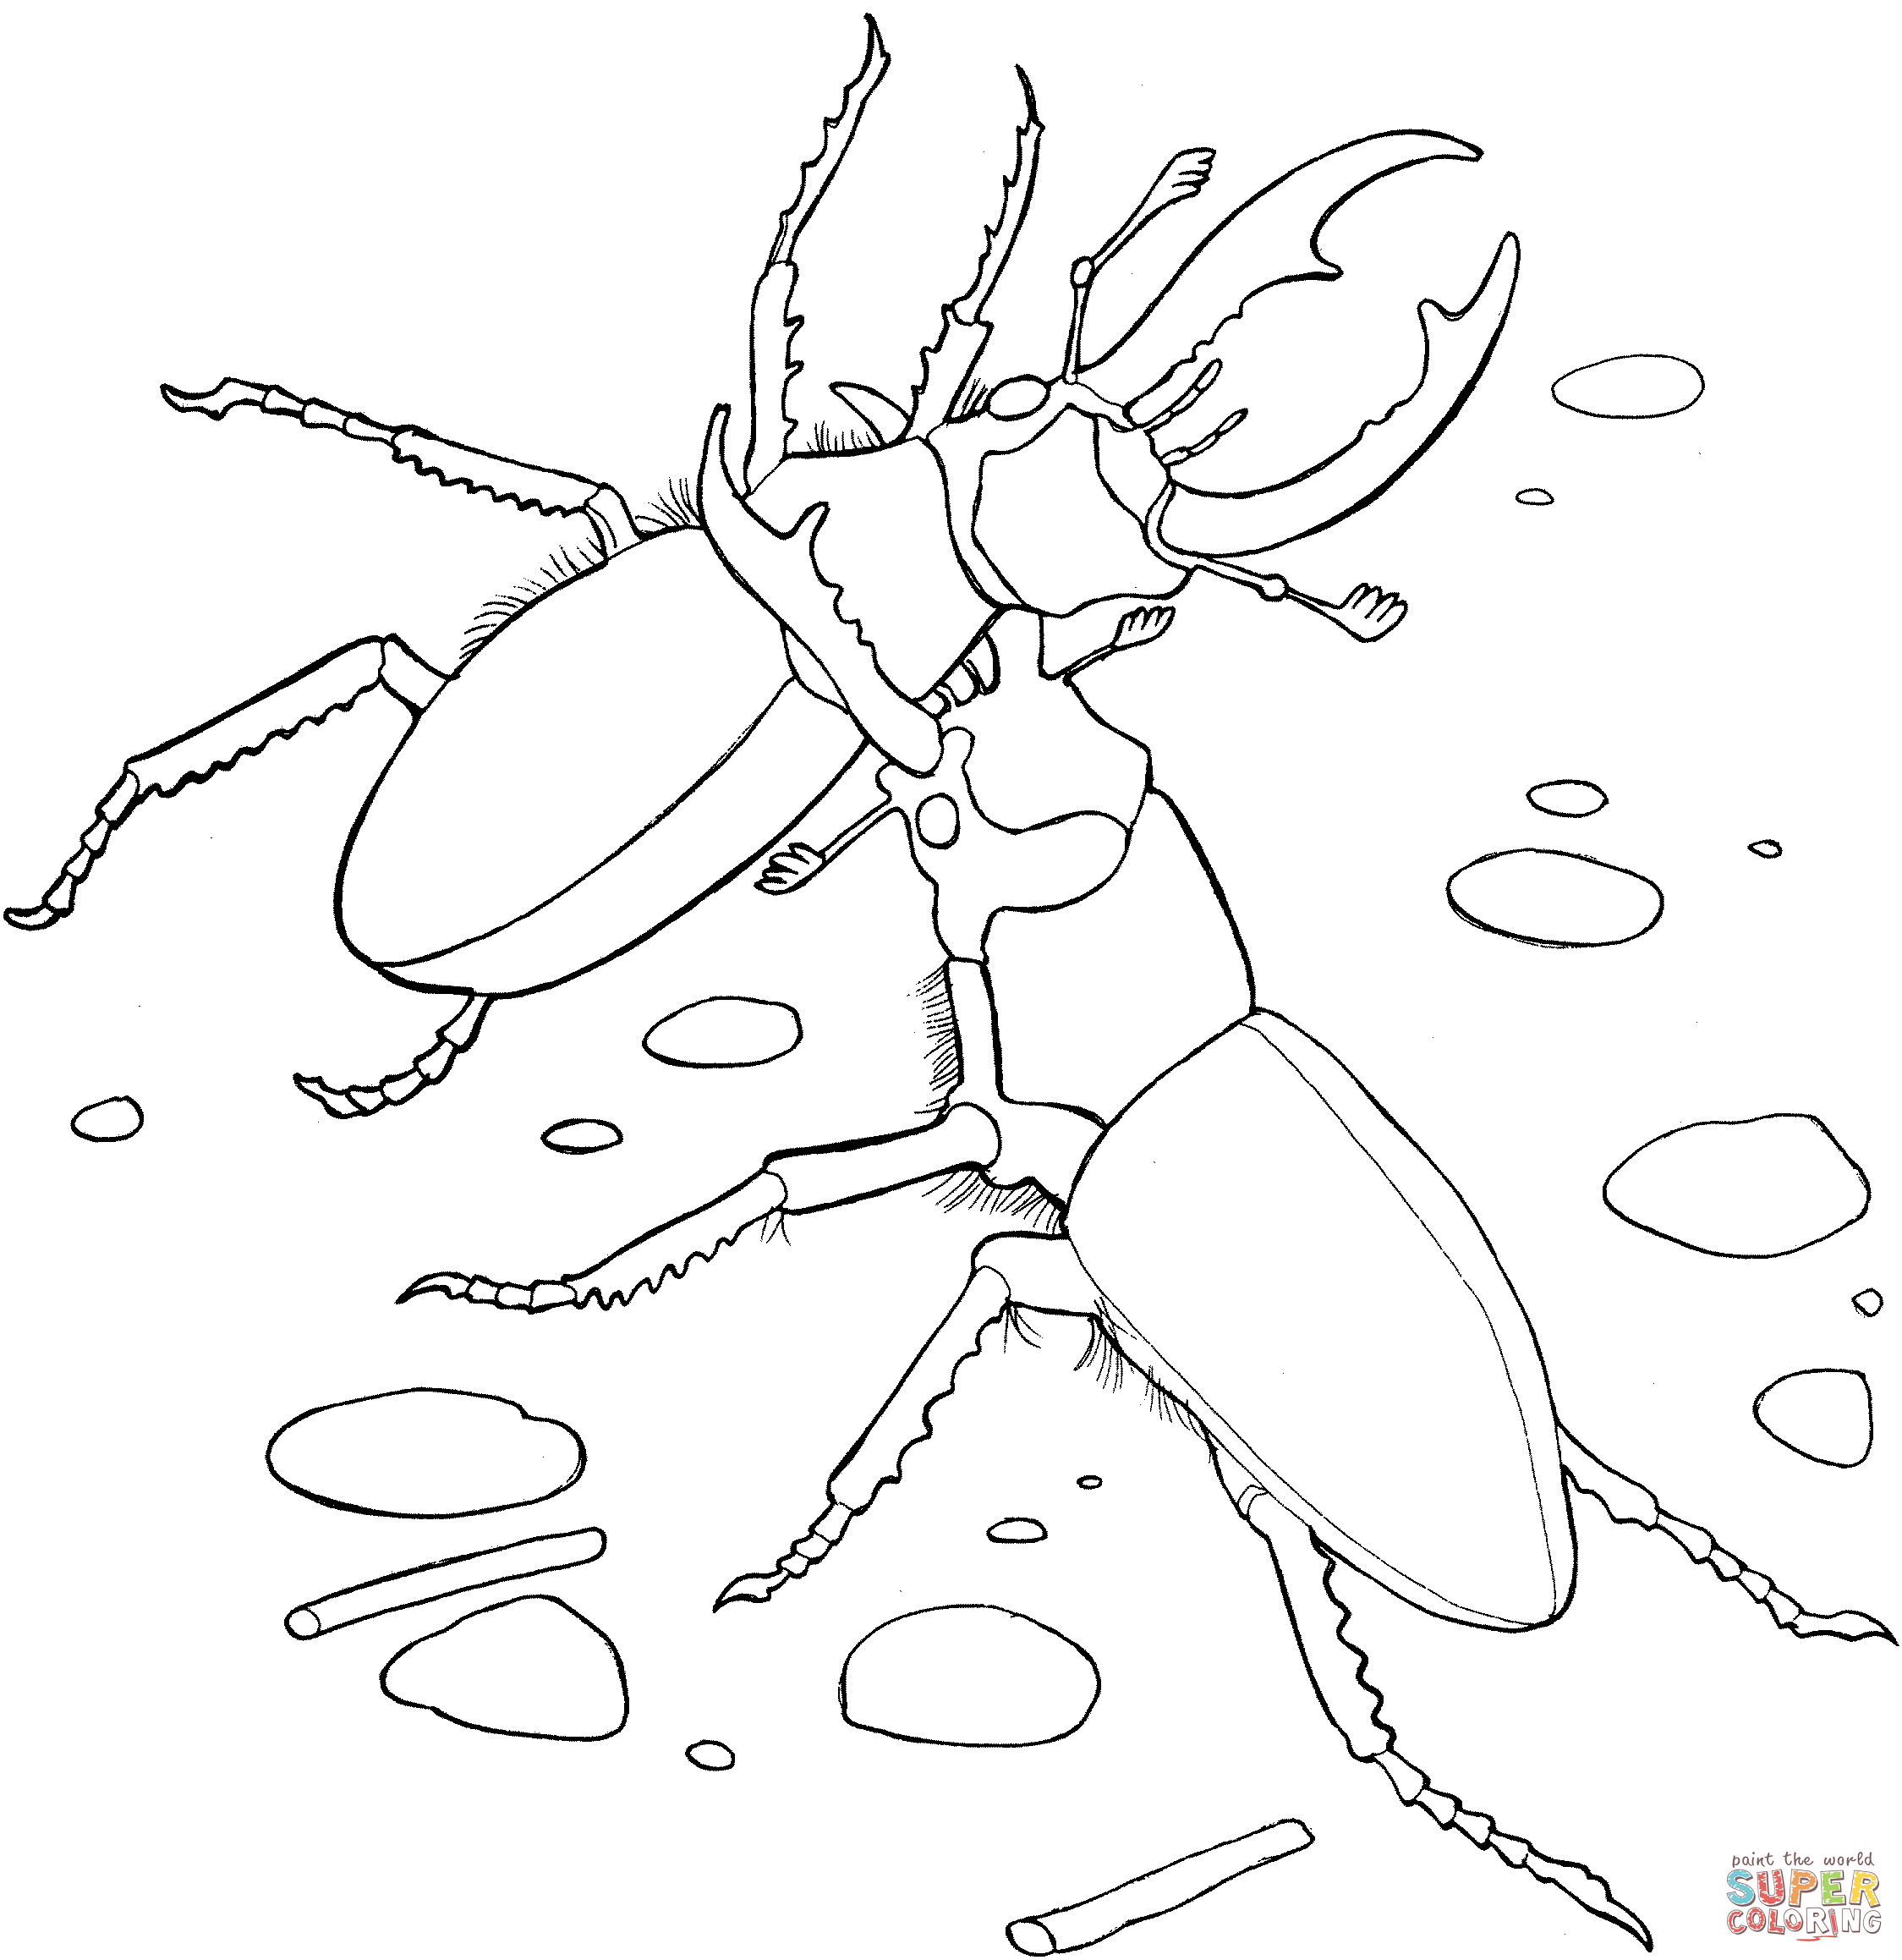 Beetle coloring #11, Download drawings